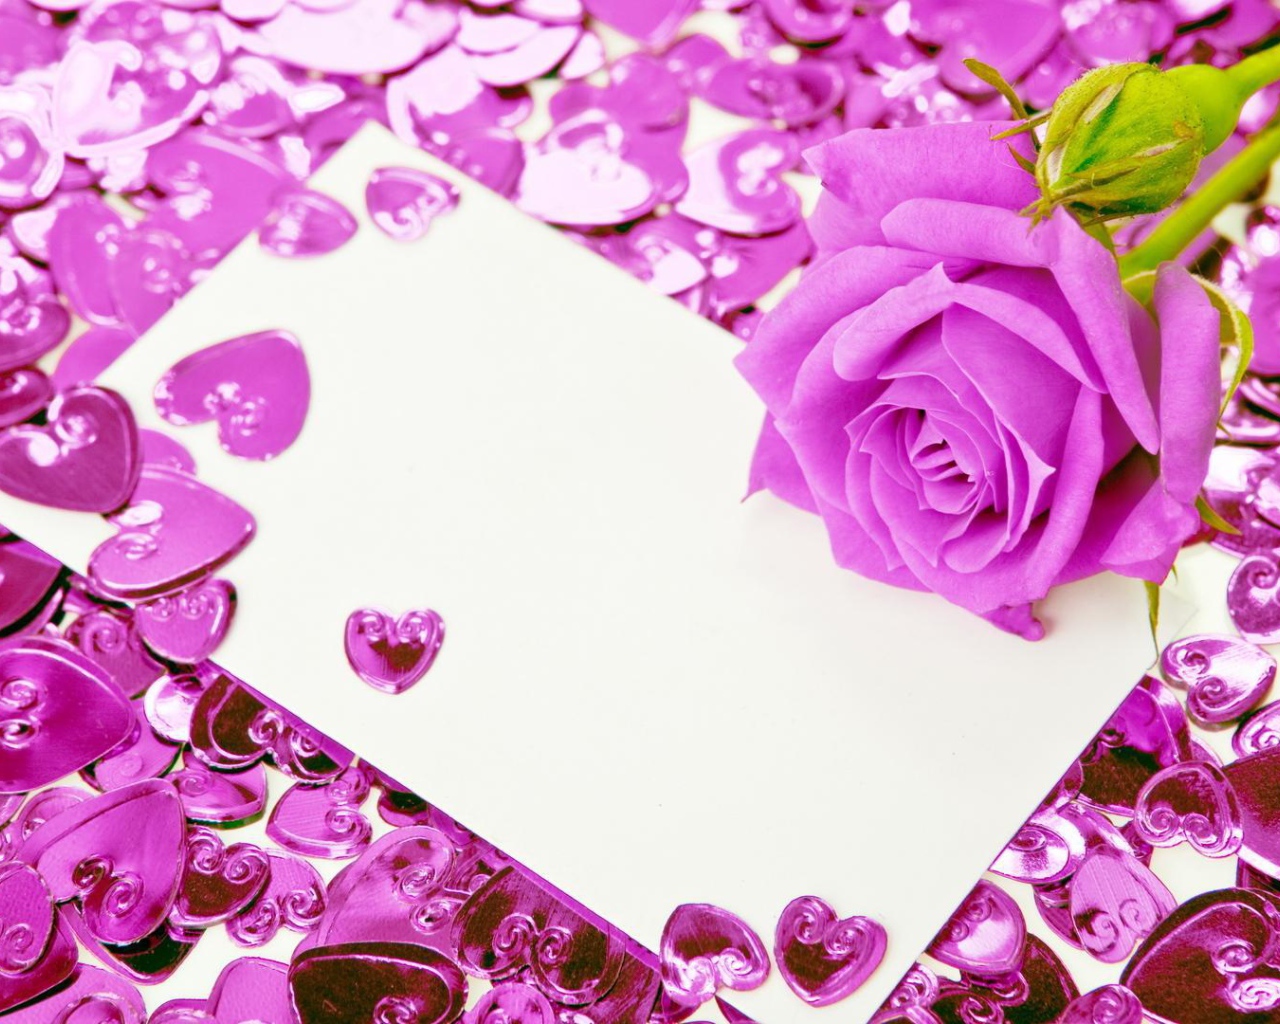 Фиолетовая роза и сердечки